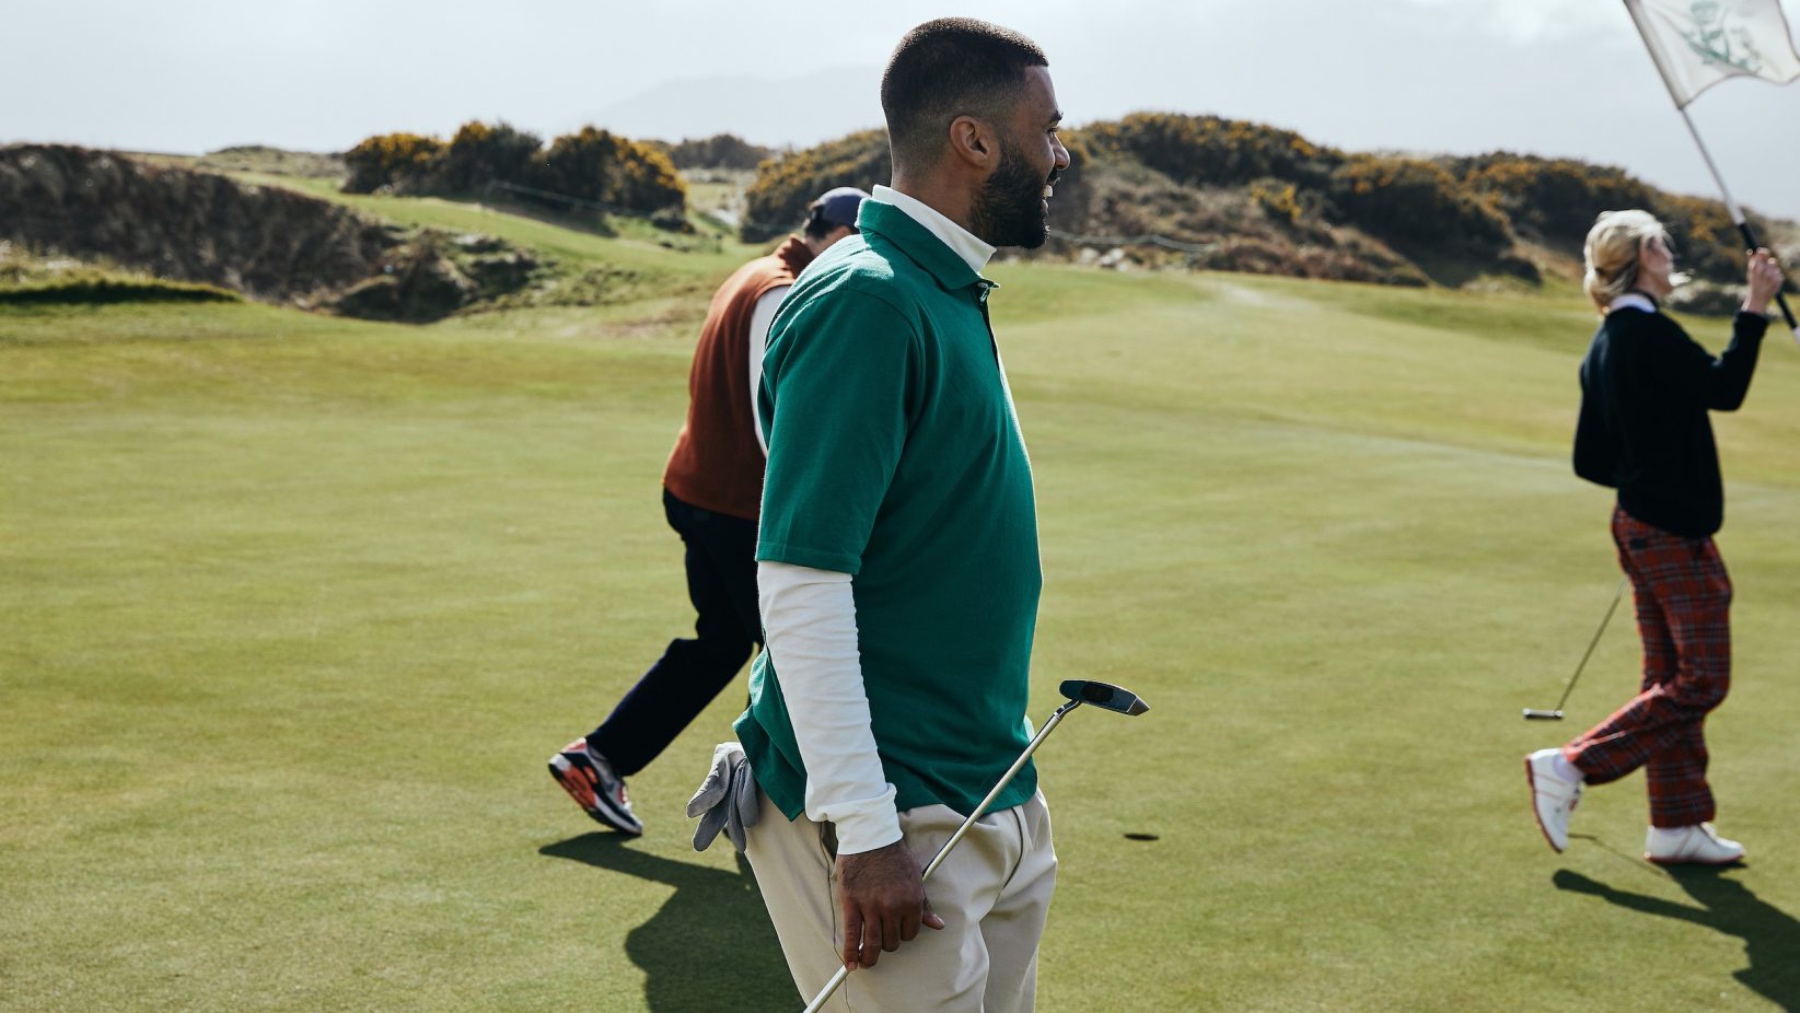 Lograr Glosario trompeta La colección de Adidas Golf crece con esta colaboración especial de Gucci